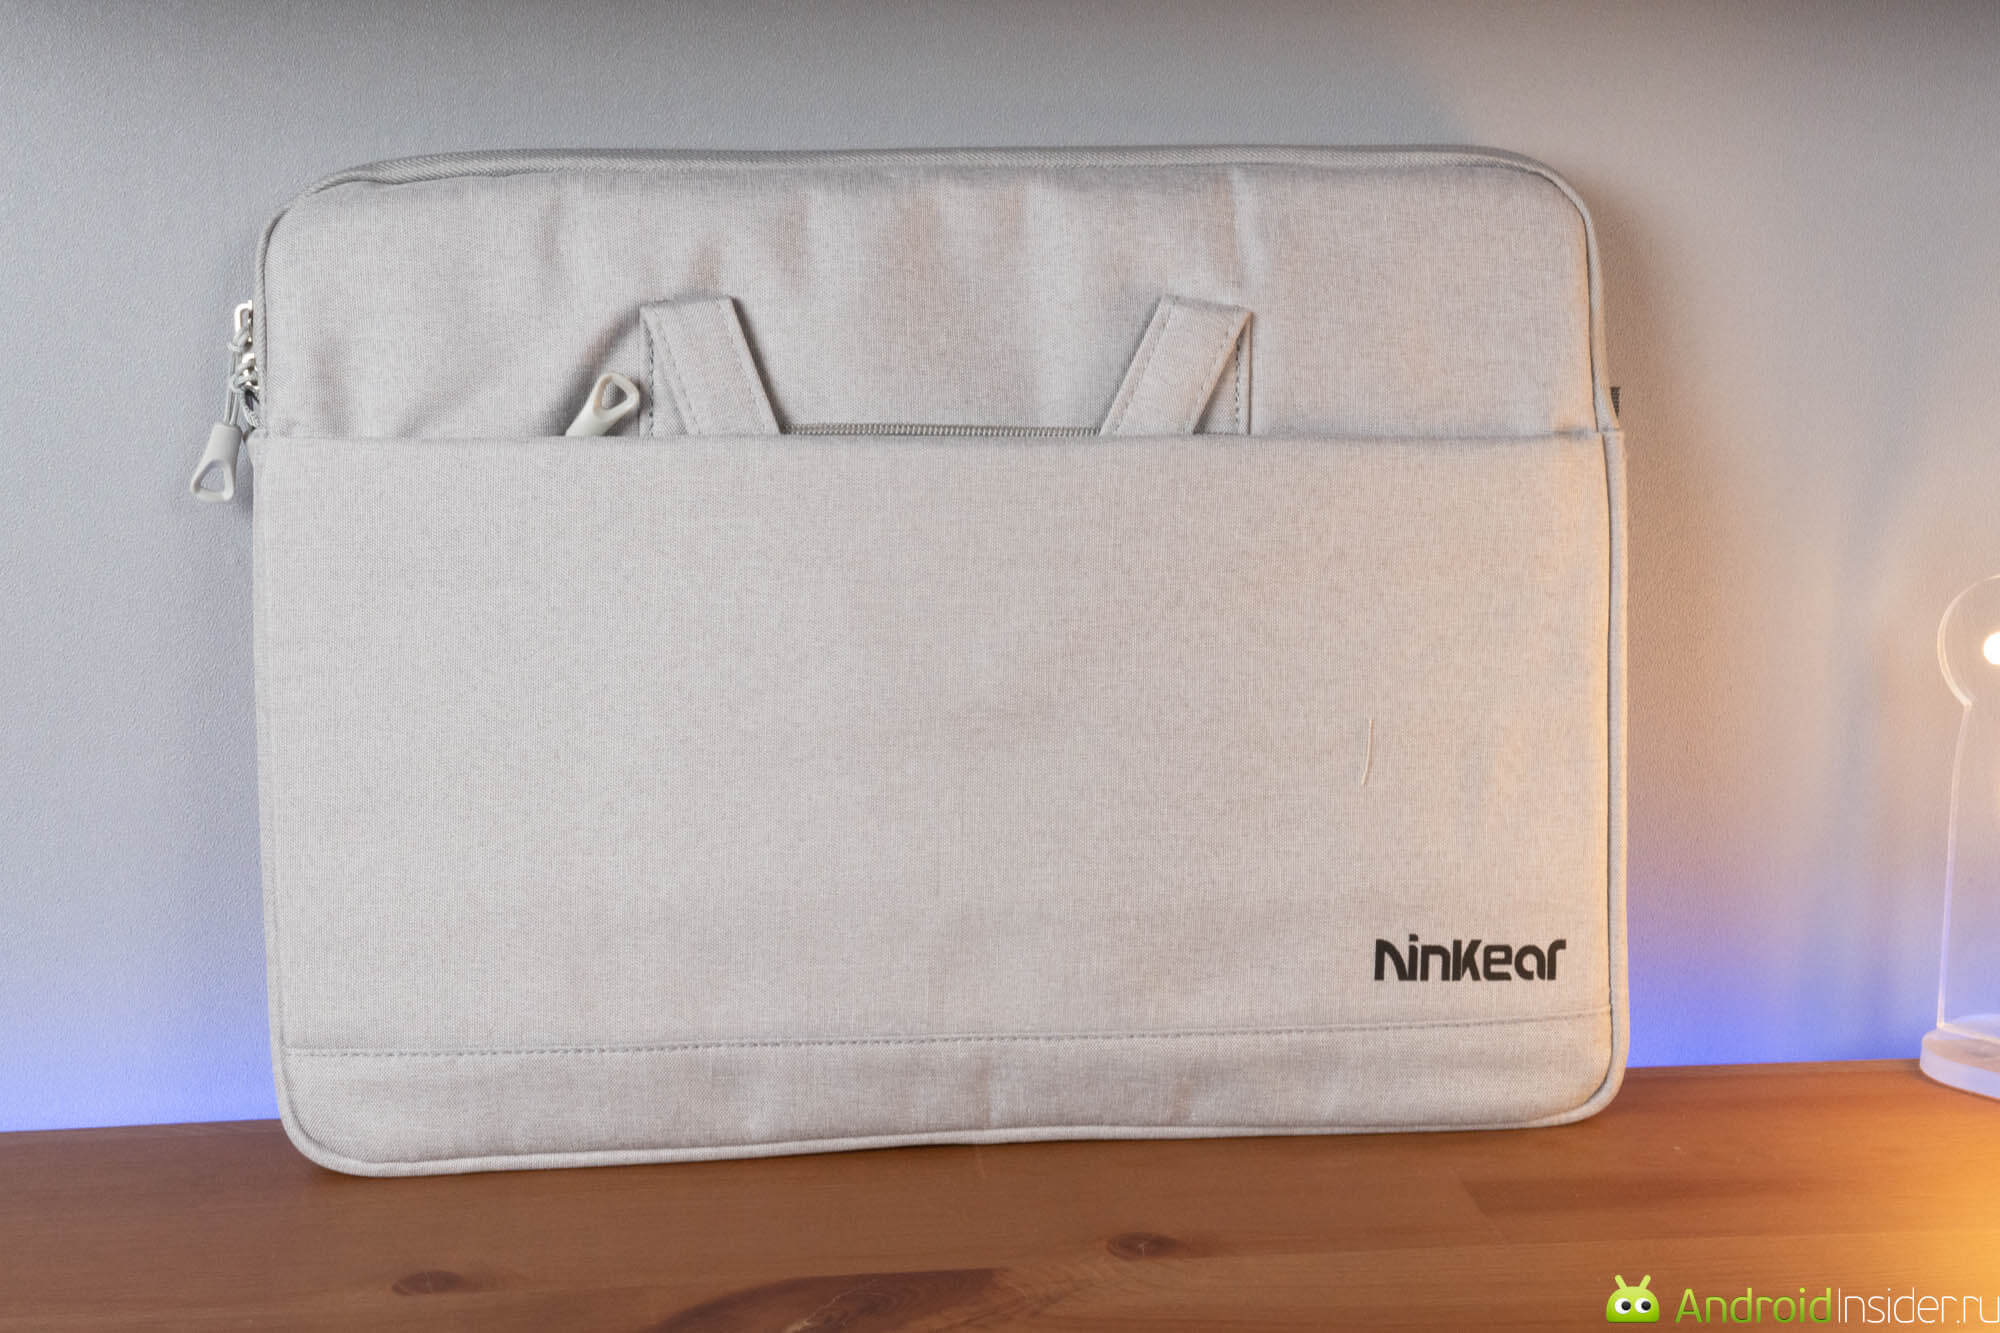 Обзор ноутбука Ninkear N16 Pro. Носить компьютер можно в такой стильной сумке. Фото.